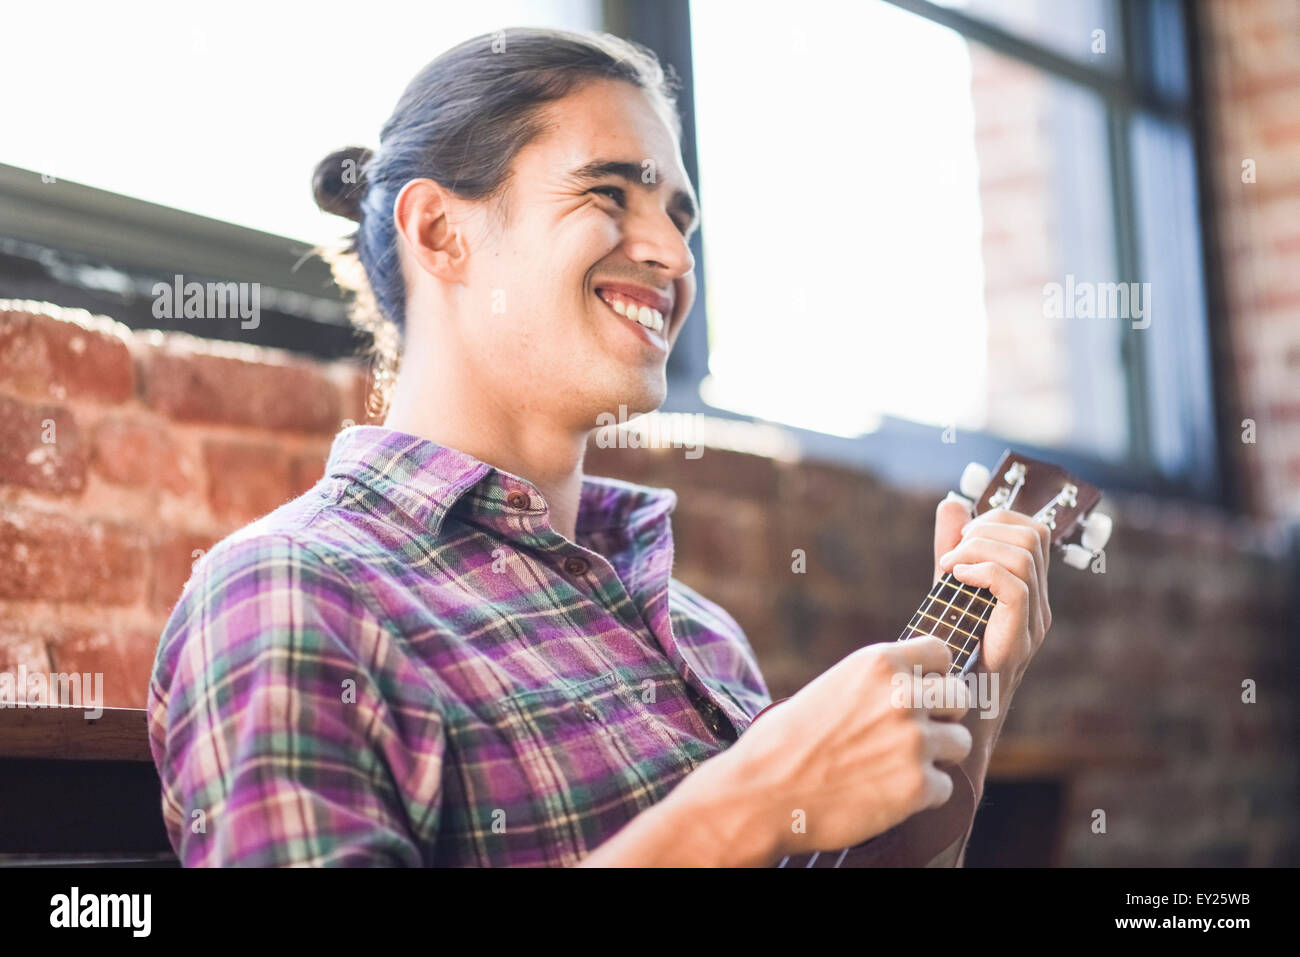 Young man playing ukulele Stock Photo